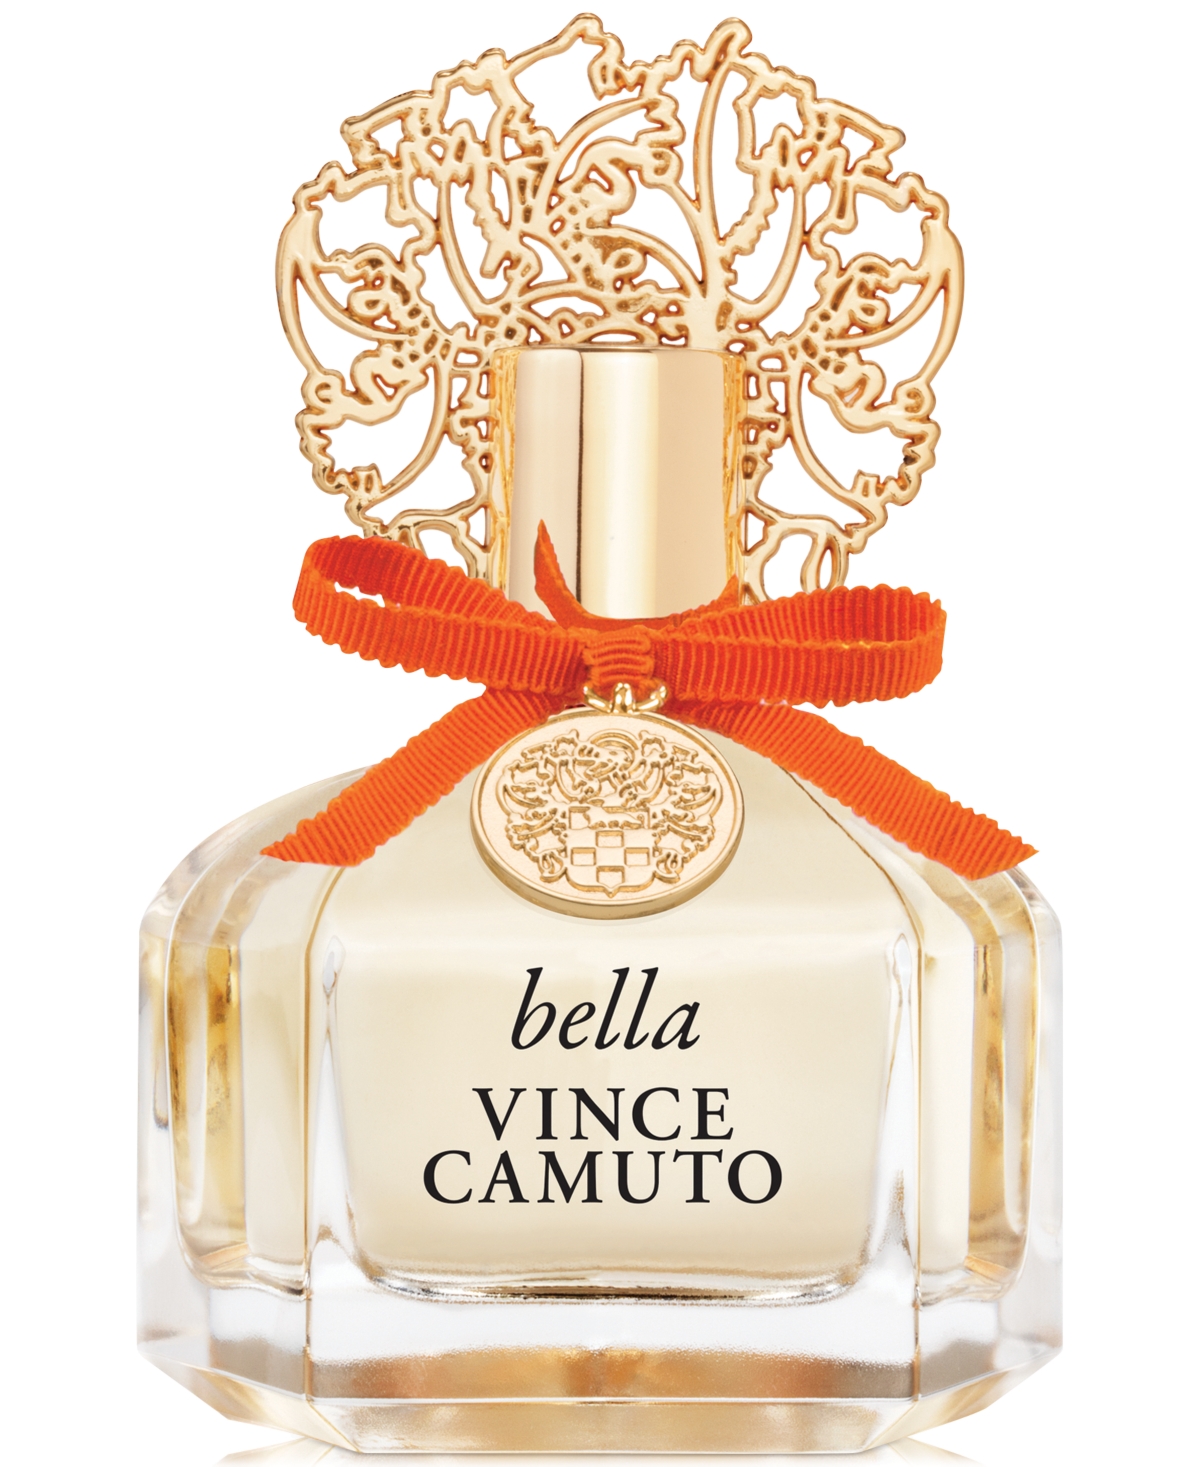 Vince Camuto 3-Pc. Bella Notte Eau de Parfum Gift Set